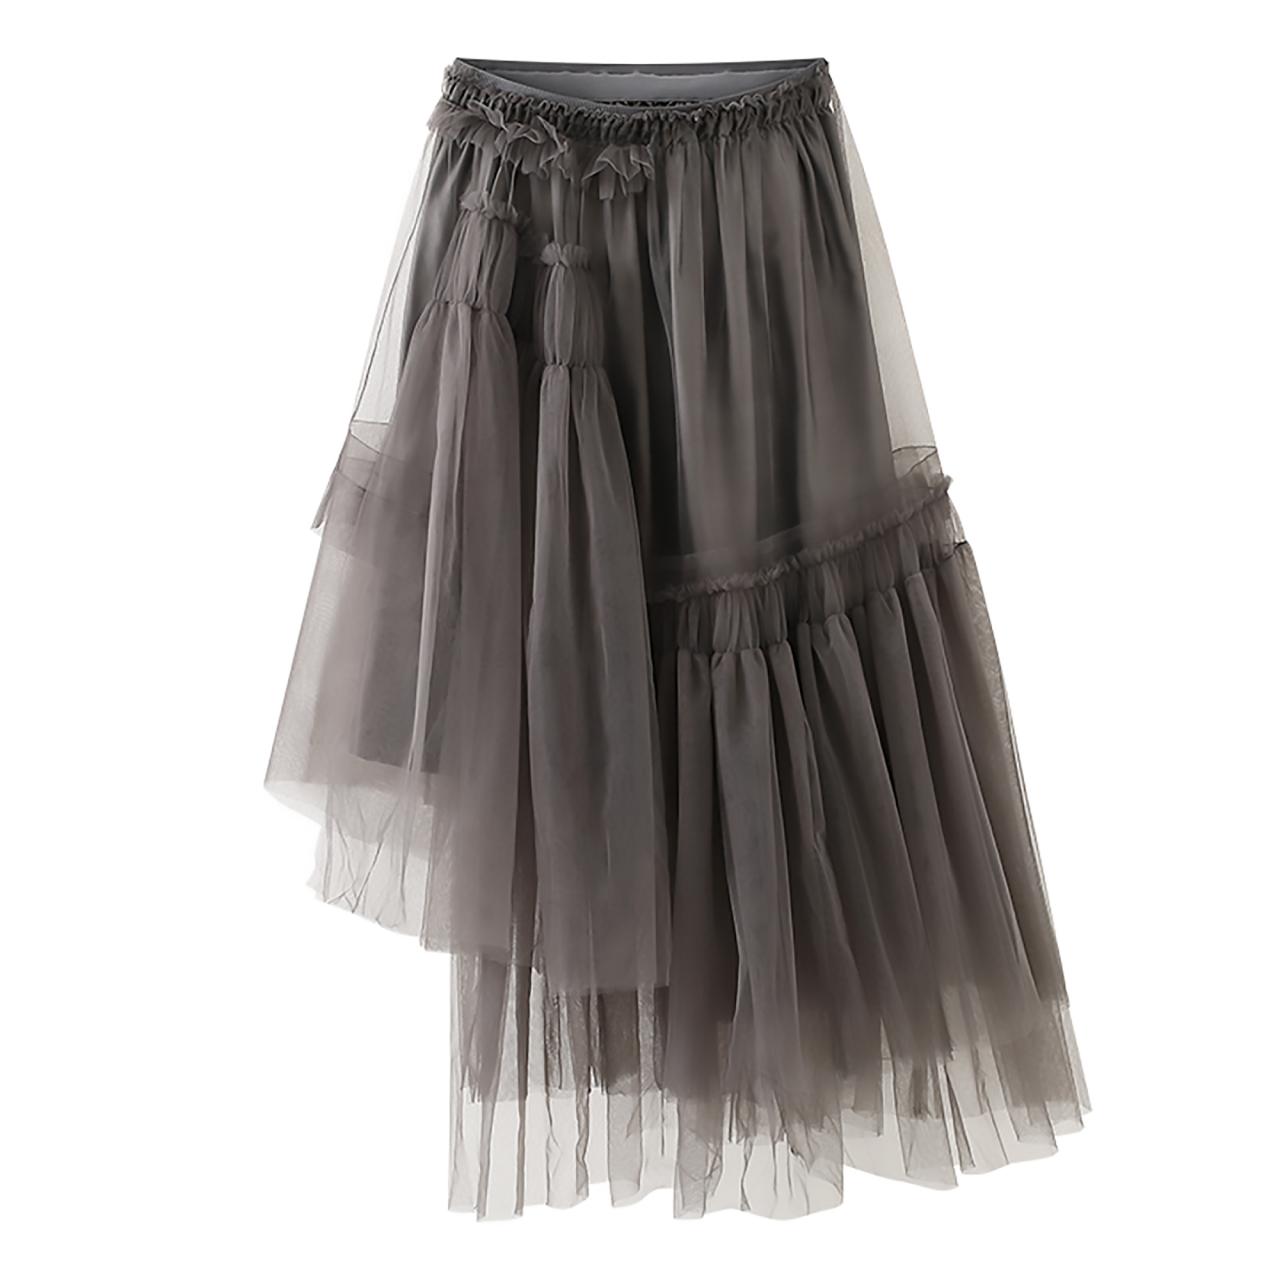 S40 New Arrival Skirt, Street Style Skirt,Tulle Skirt,Fashion Women Skirt,Spring Autumn Skirt ,Ankle-Length Skirt